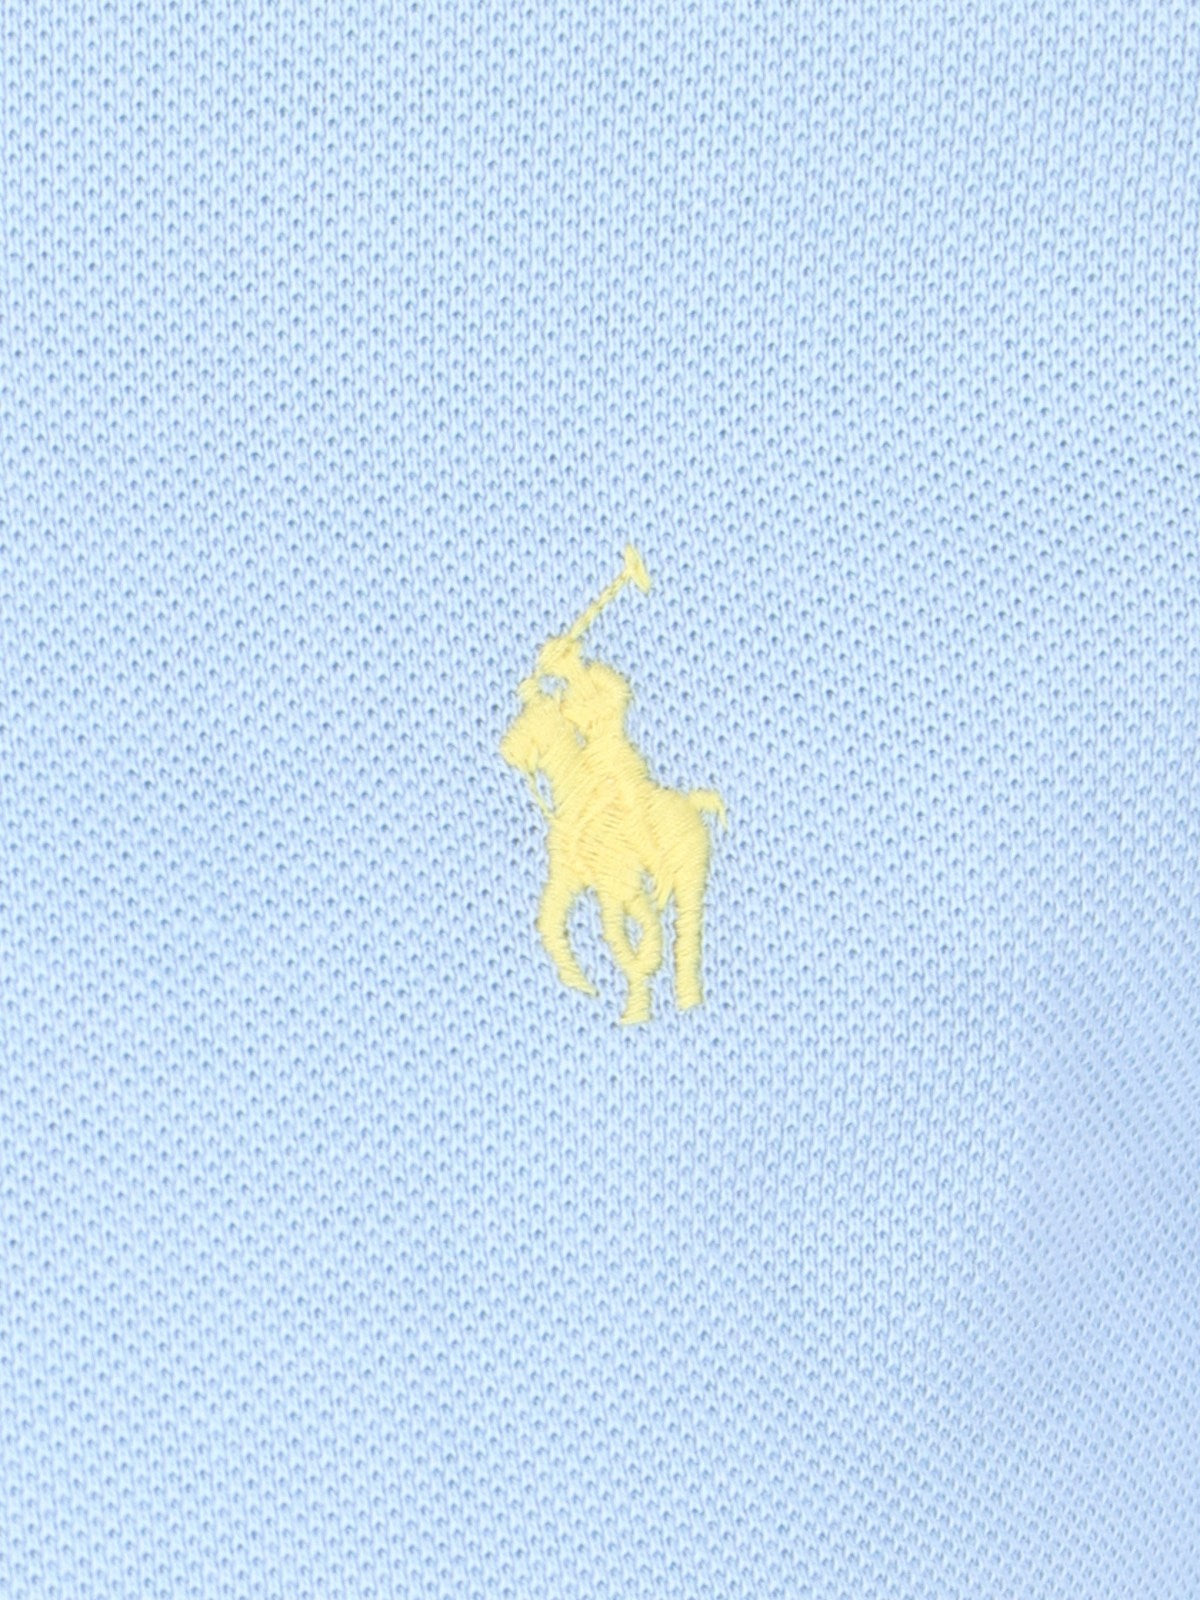 Polo Ralph Lauren polo logo-t-shirt-Polo Ralph Lauren-Polo logo Polo Ralph Lauren, in cotone azzurro, colletto classico, bottoni fronte, maniche corte, ricamo logo giallo petto, orlo dritto.-Dresso